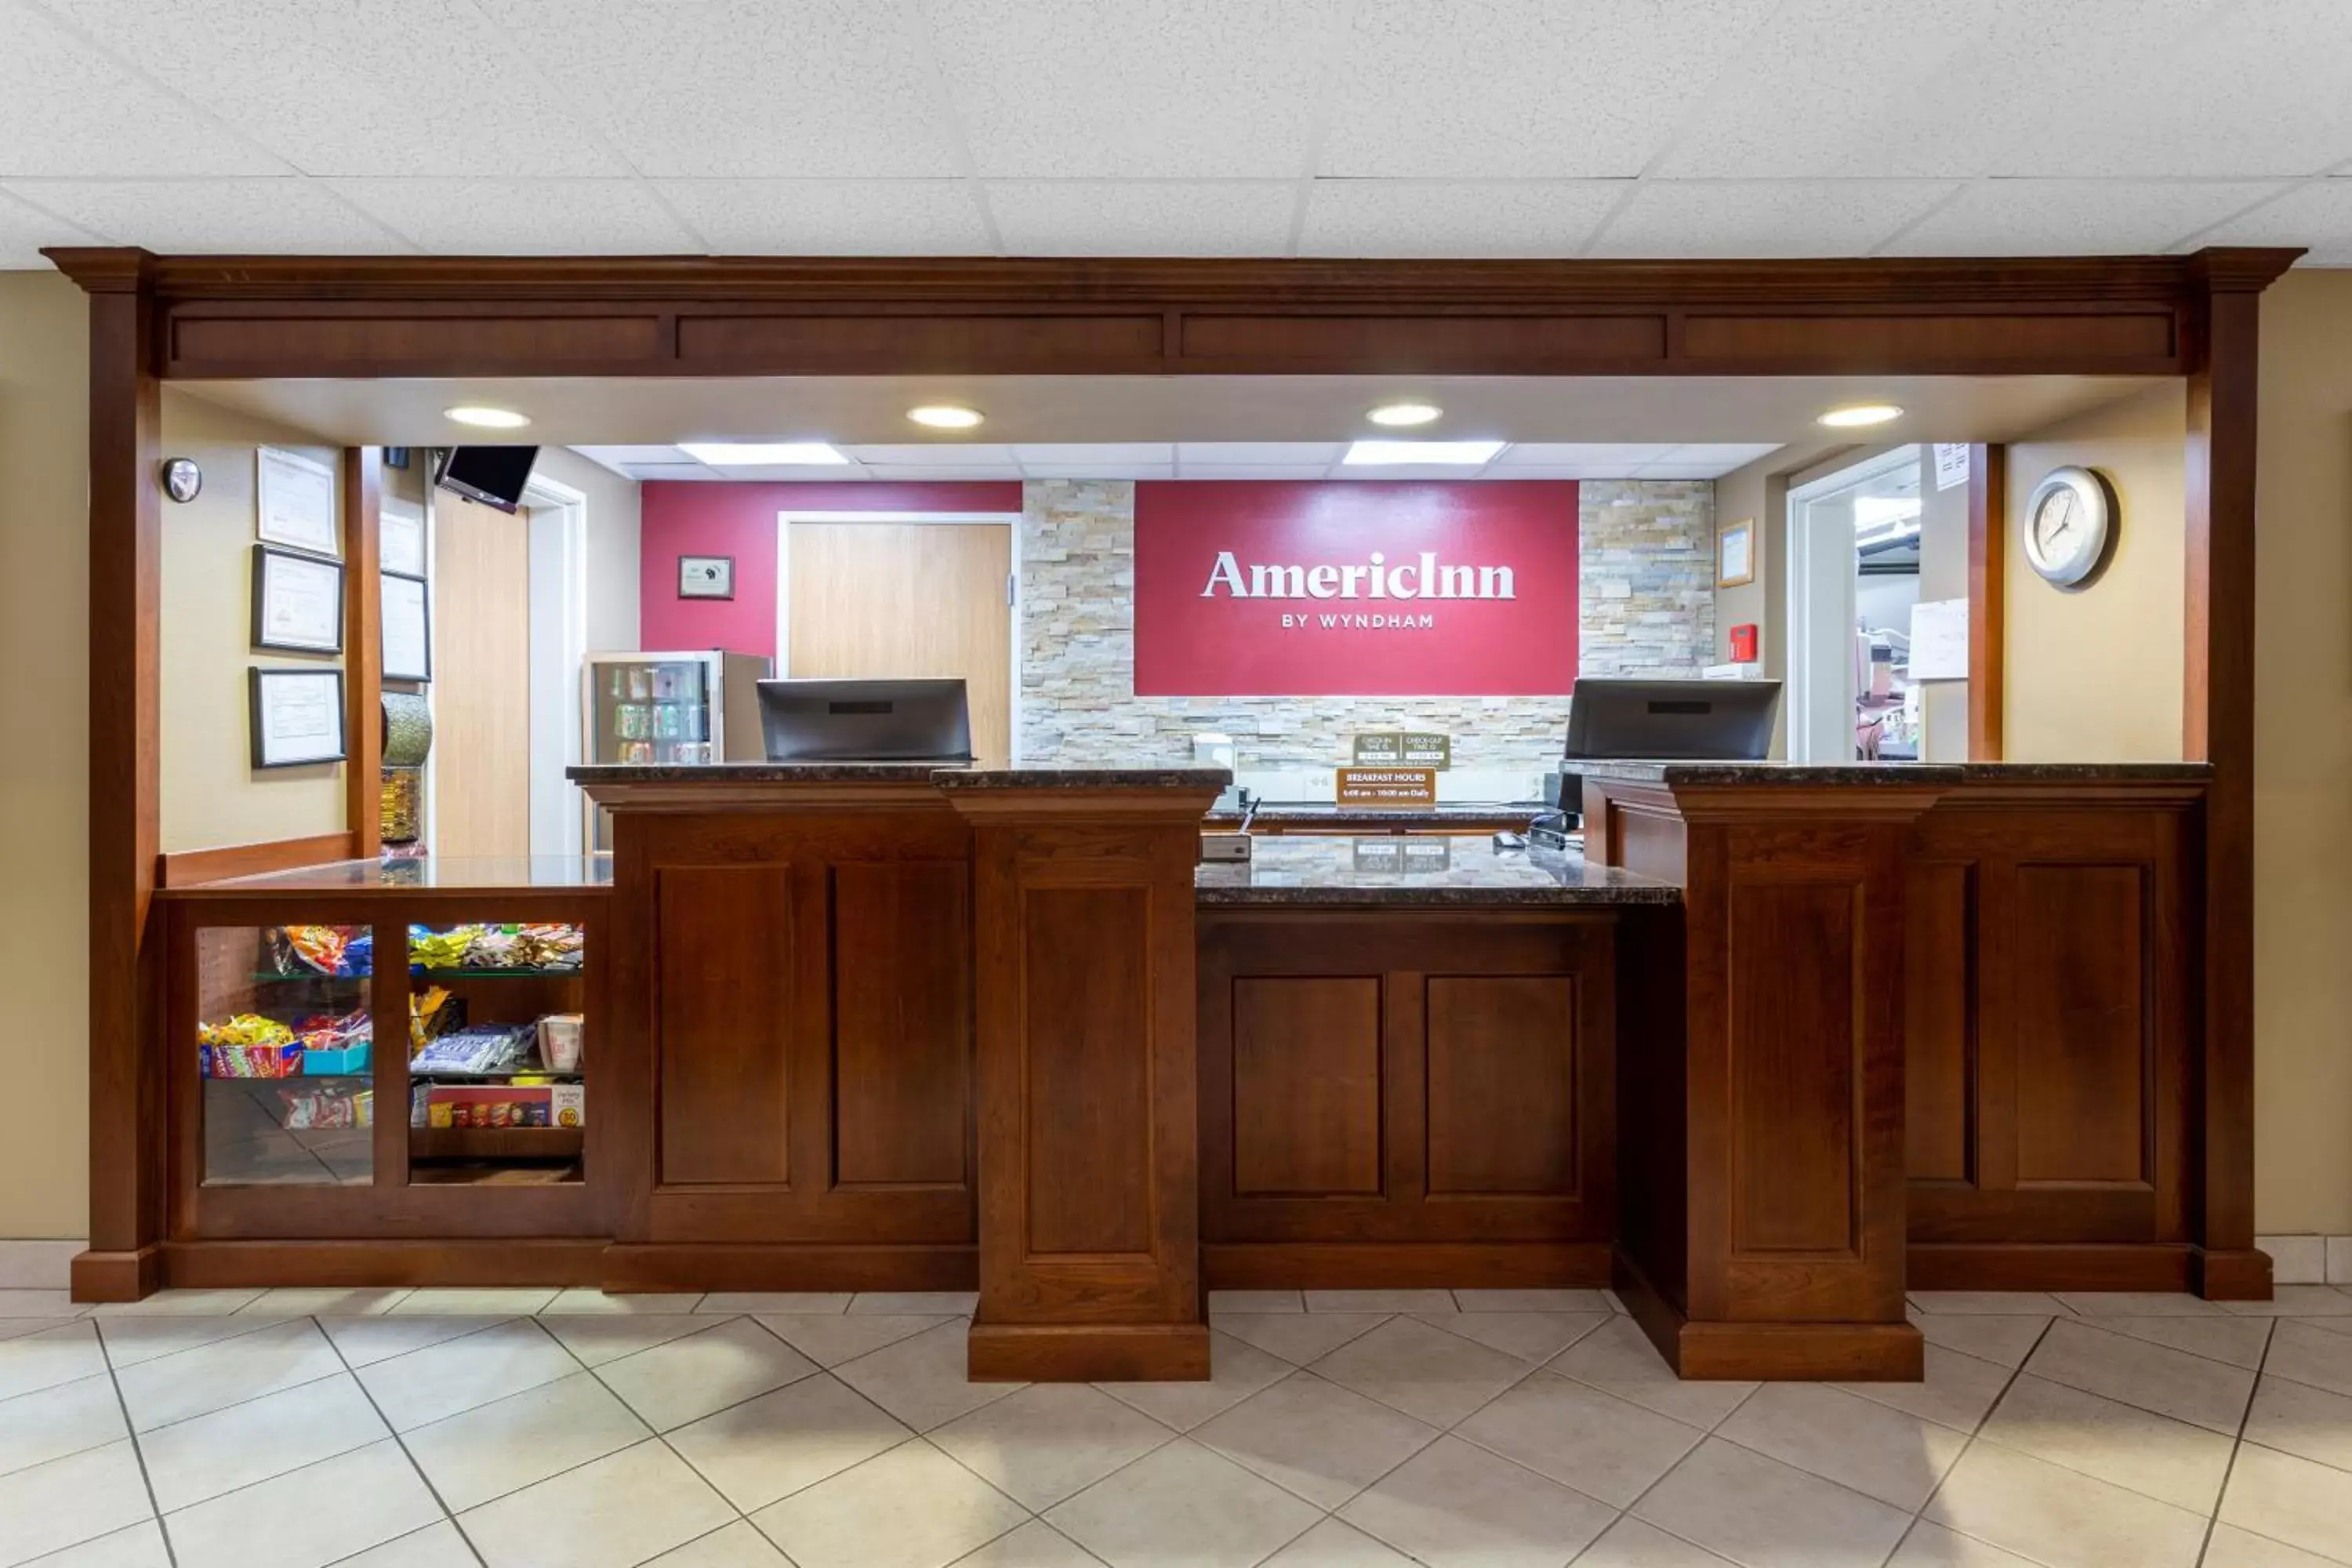 Lobby or reception, Lobby/Reception in AmericInn by Wyndham Wausau